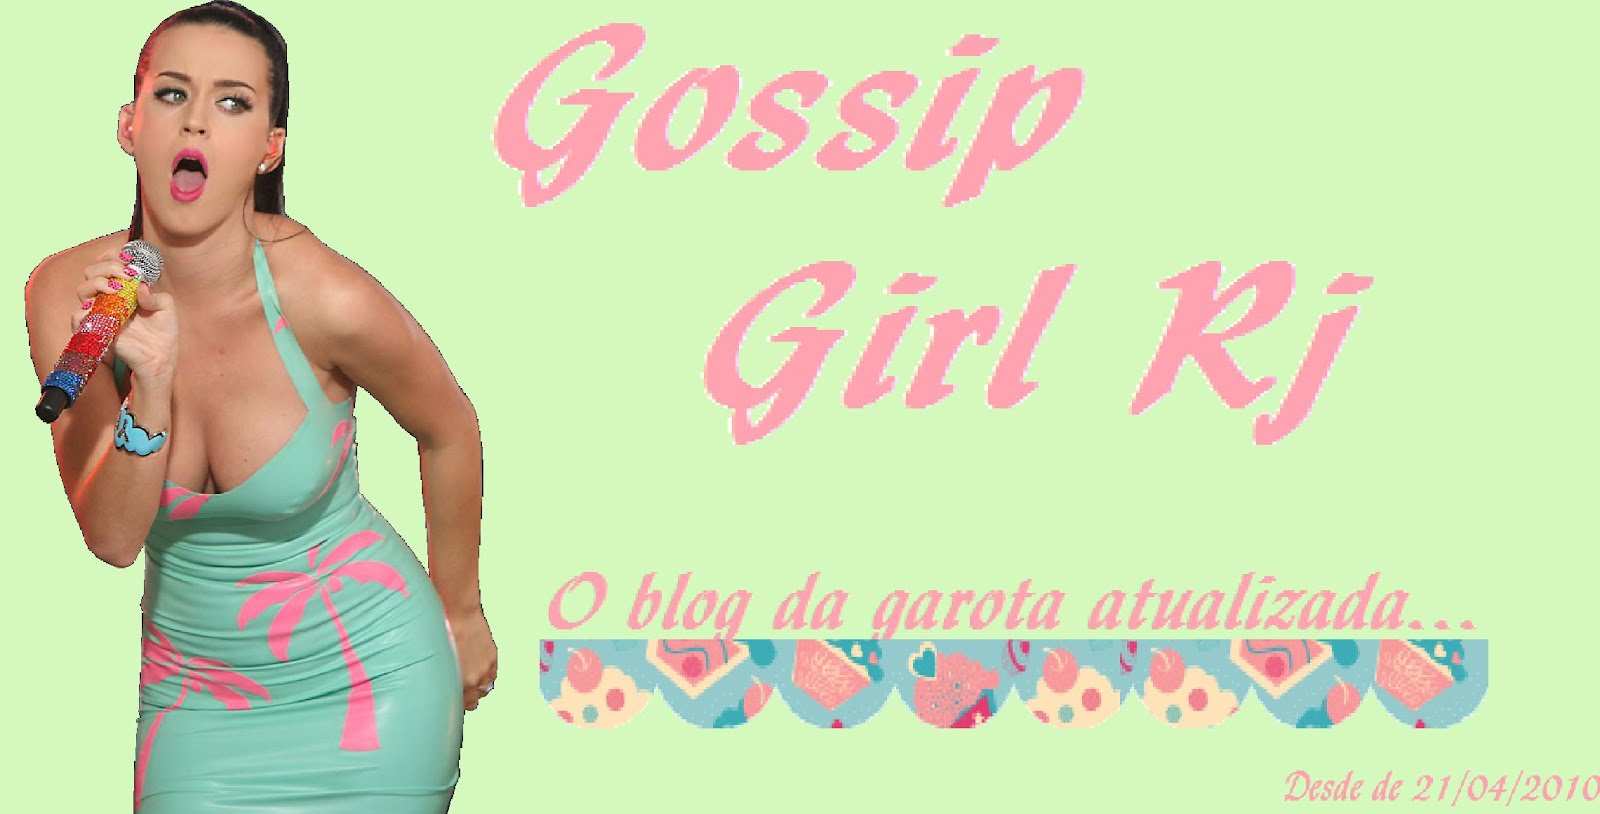 Gossip Girl RJ